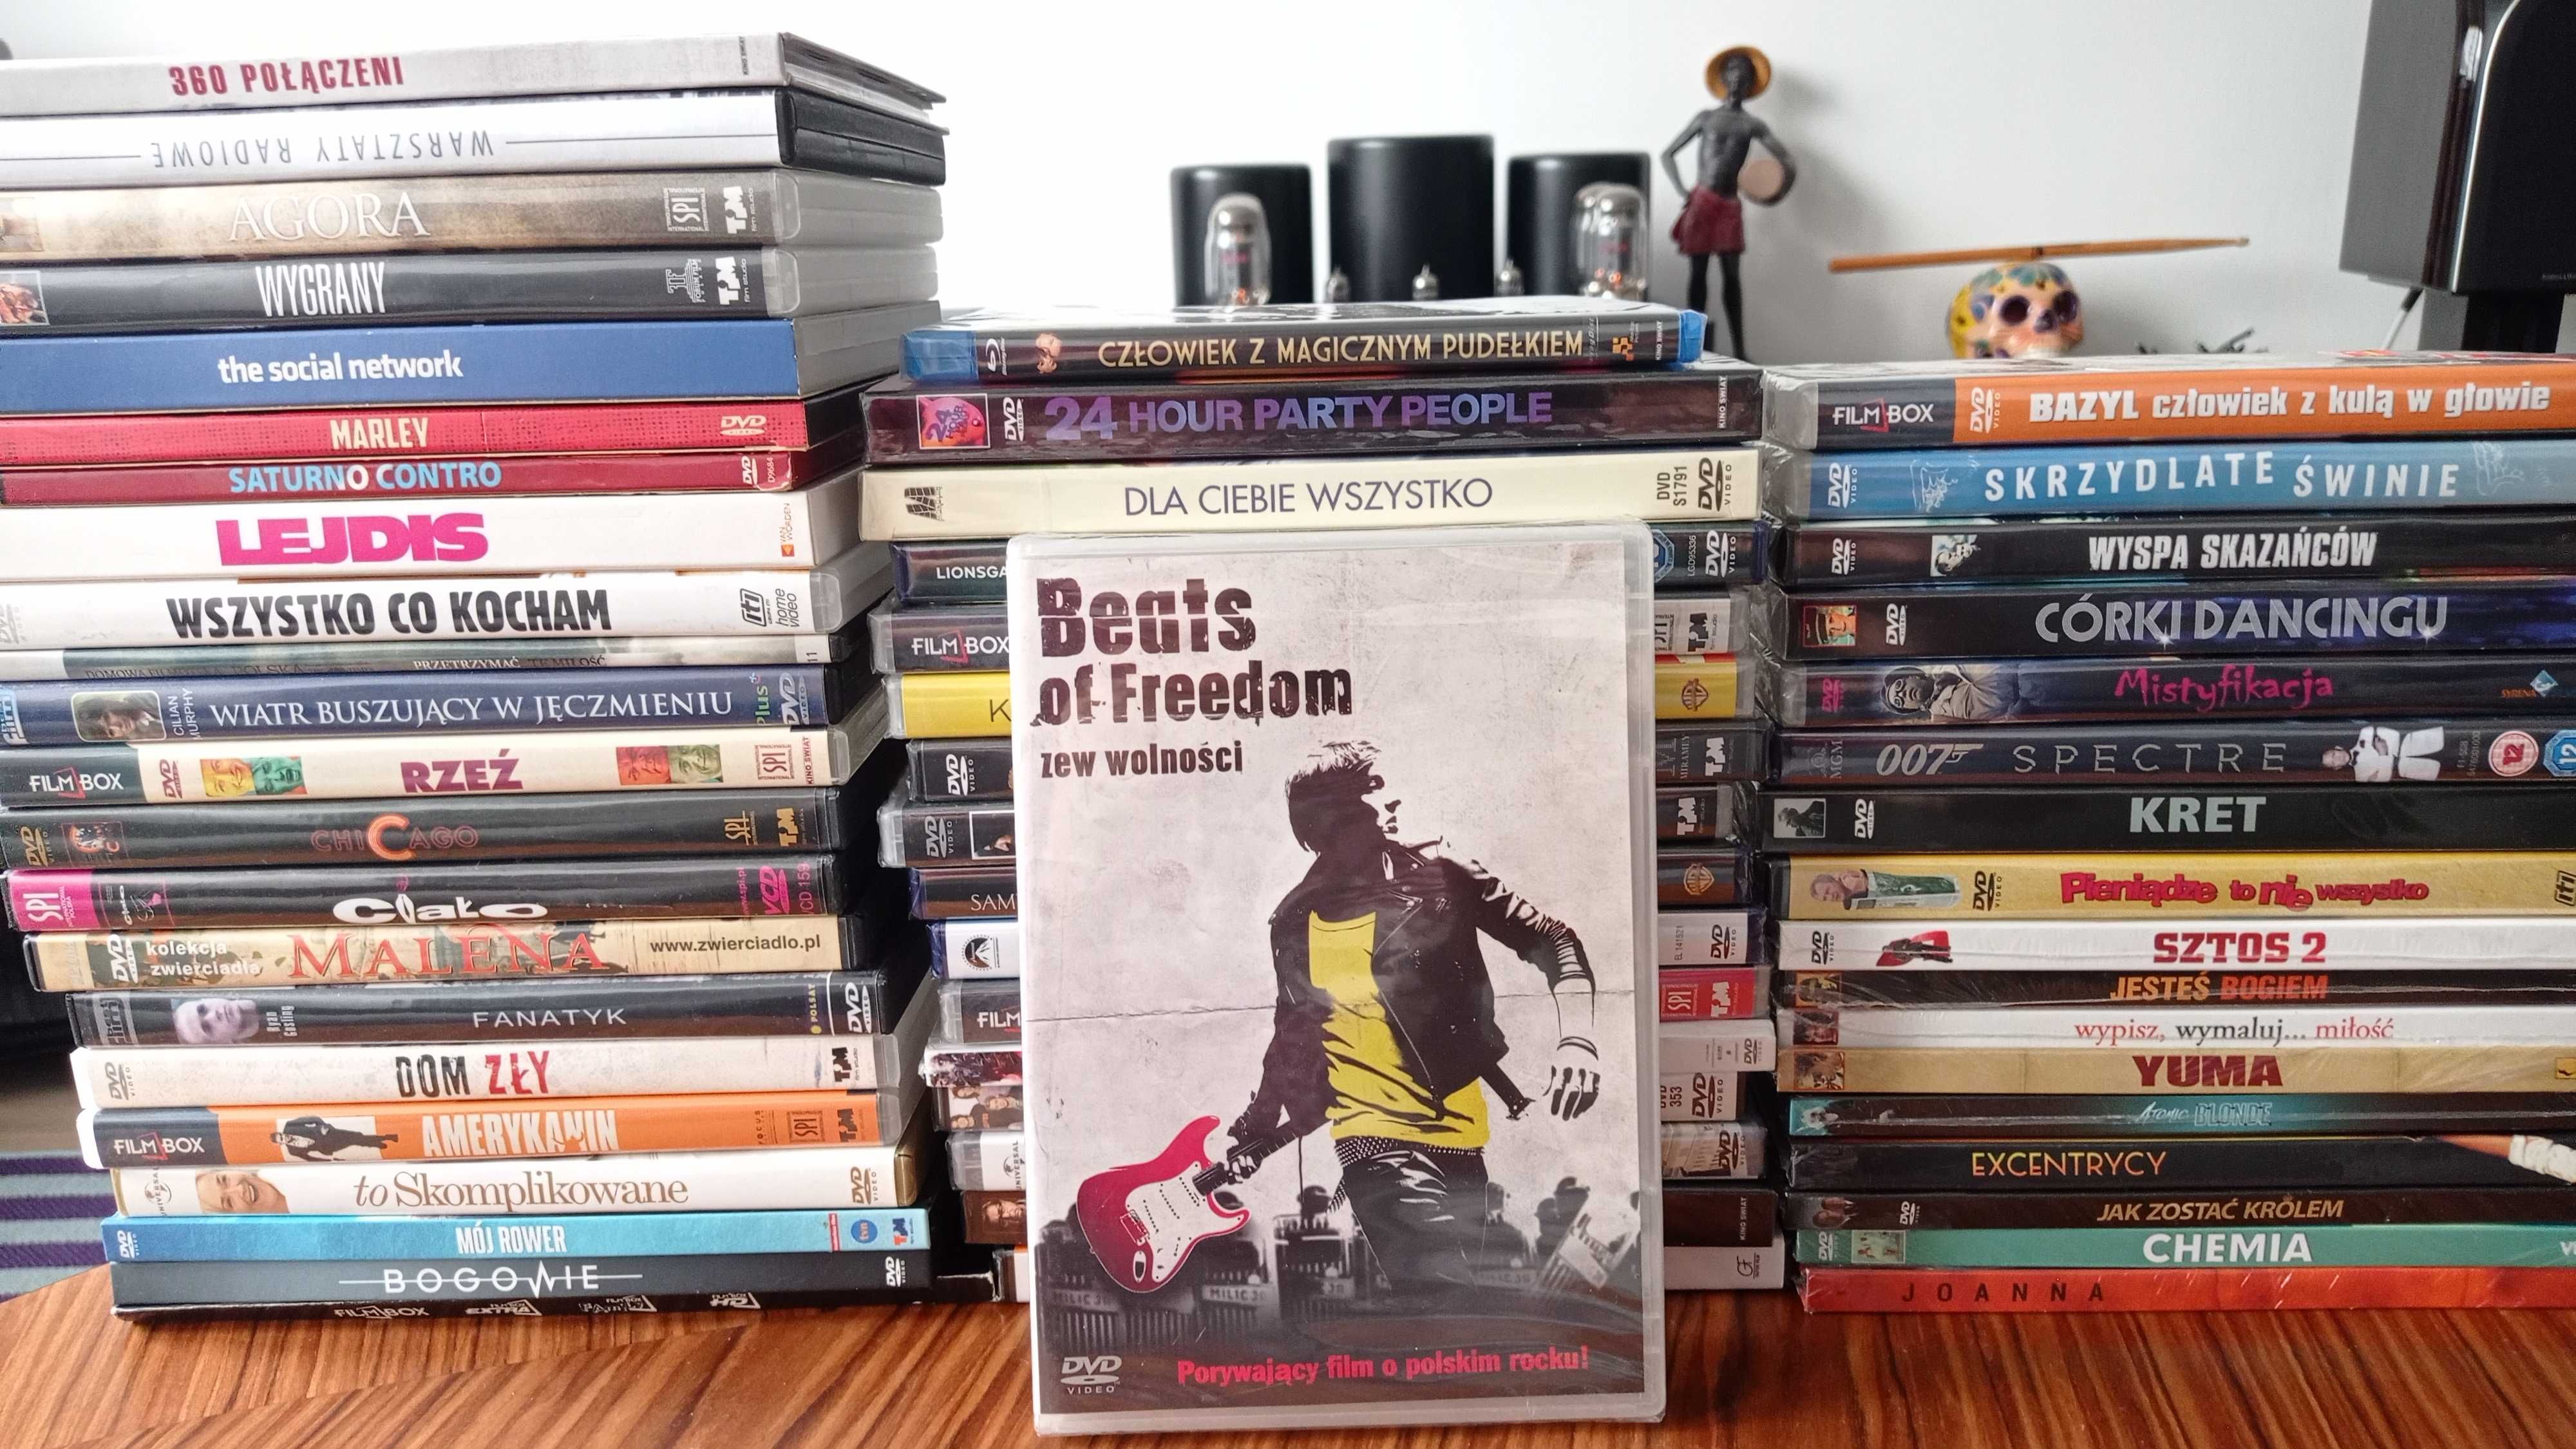 Film DVD Beats of Freedom Zew Wolności nowy folia oficjalny oryginalny